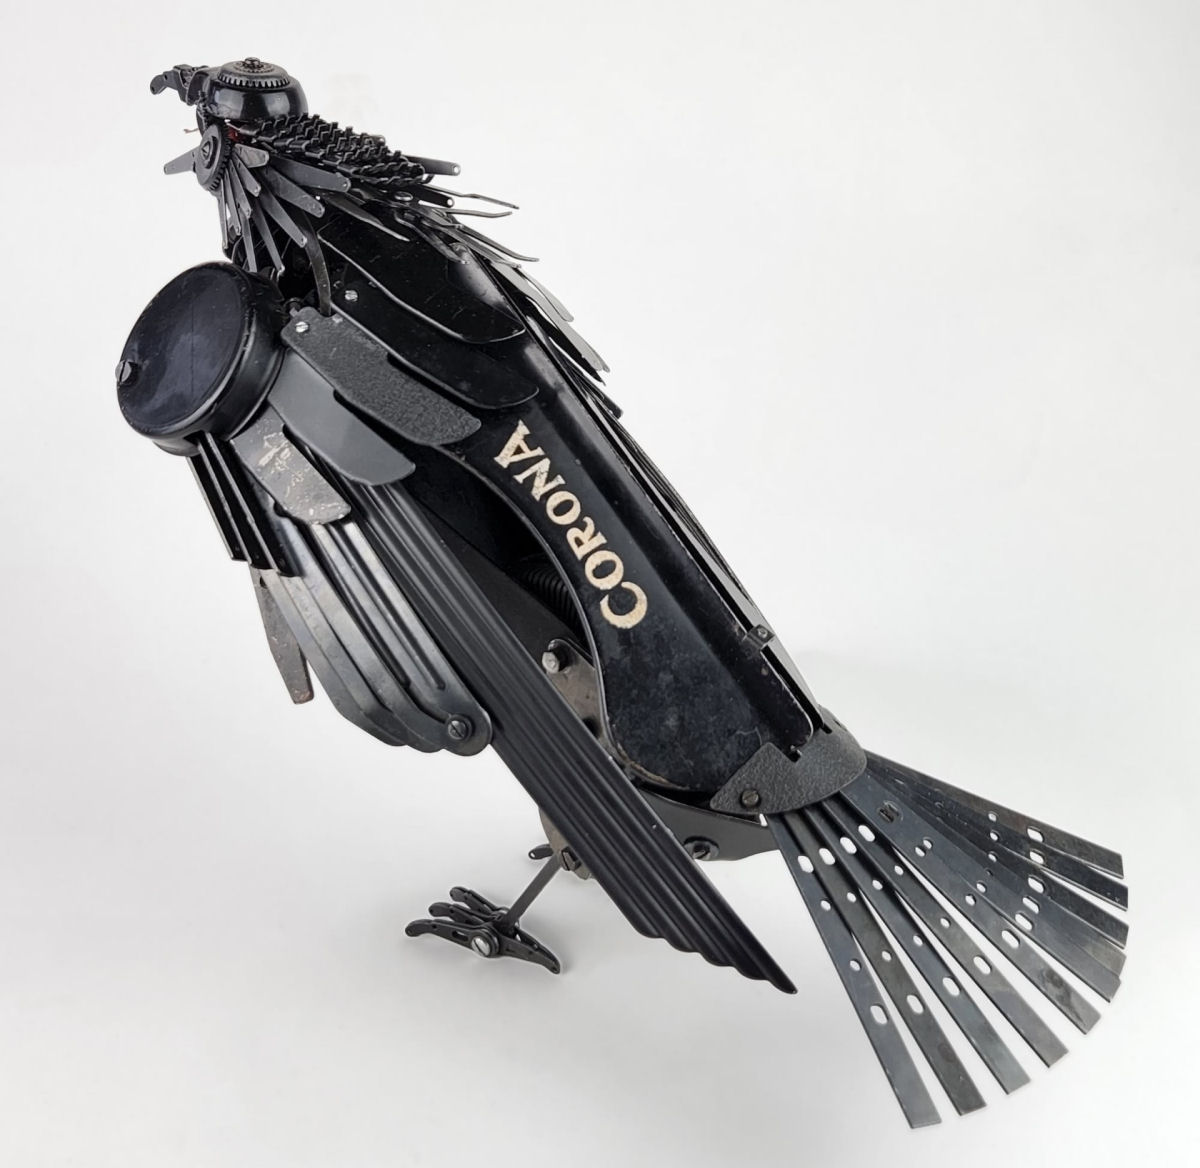 Sucata de máquinas de escrever ganham nova vida como incríveis esculturas de pássaros 05